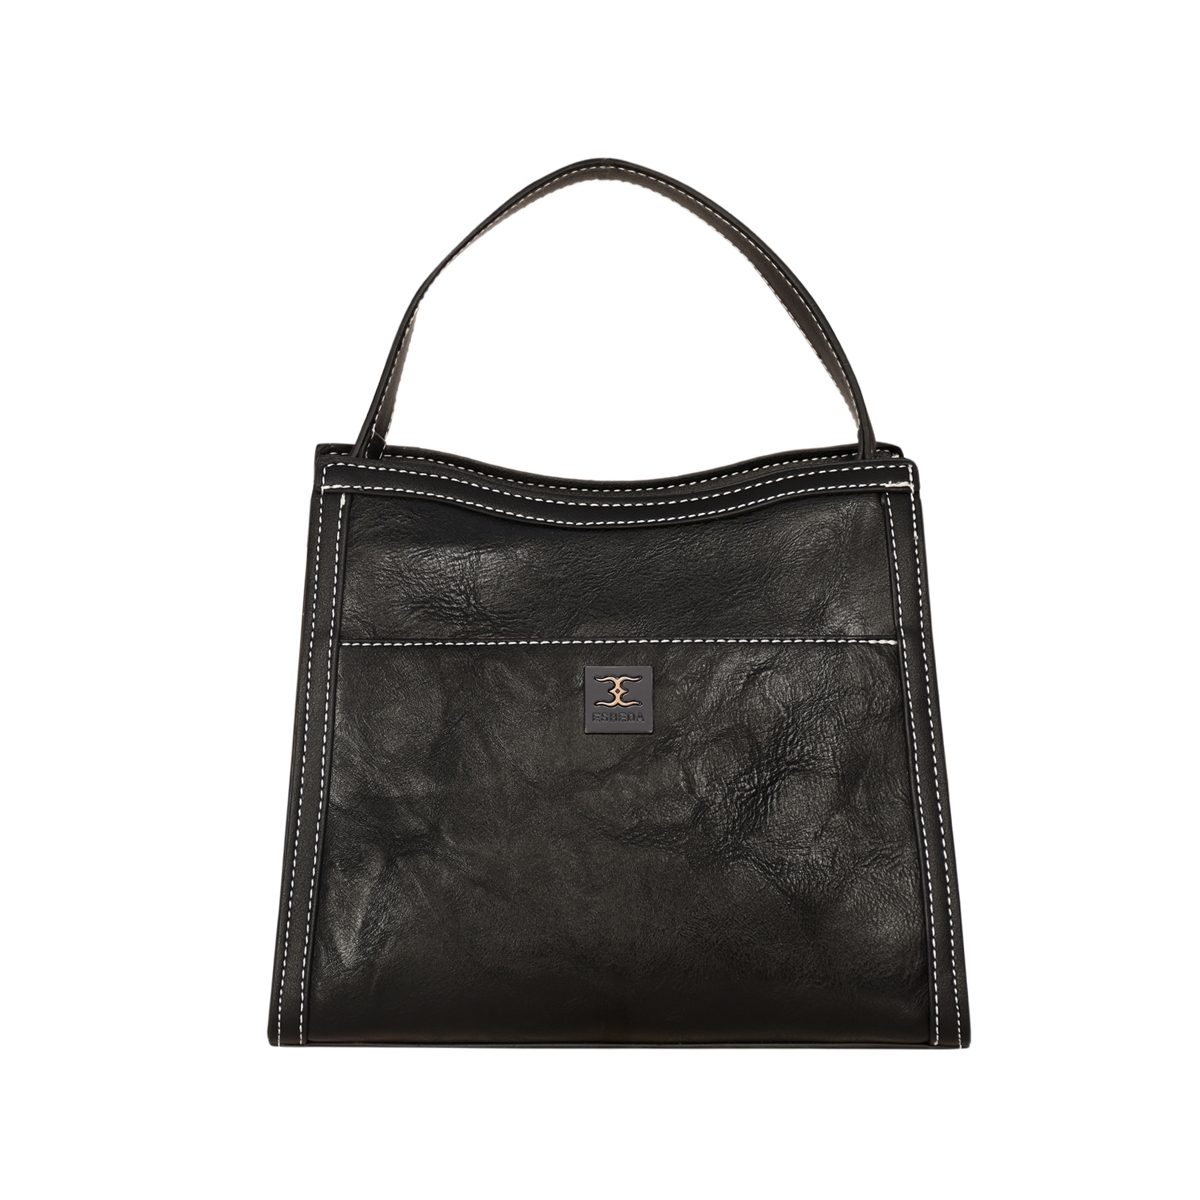 ESBEDA | ESBEDA Black Color Embroidery Dear Handbag For Womens 2